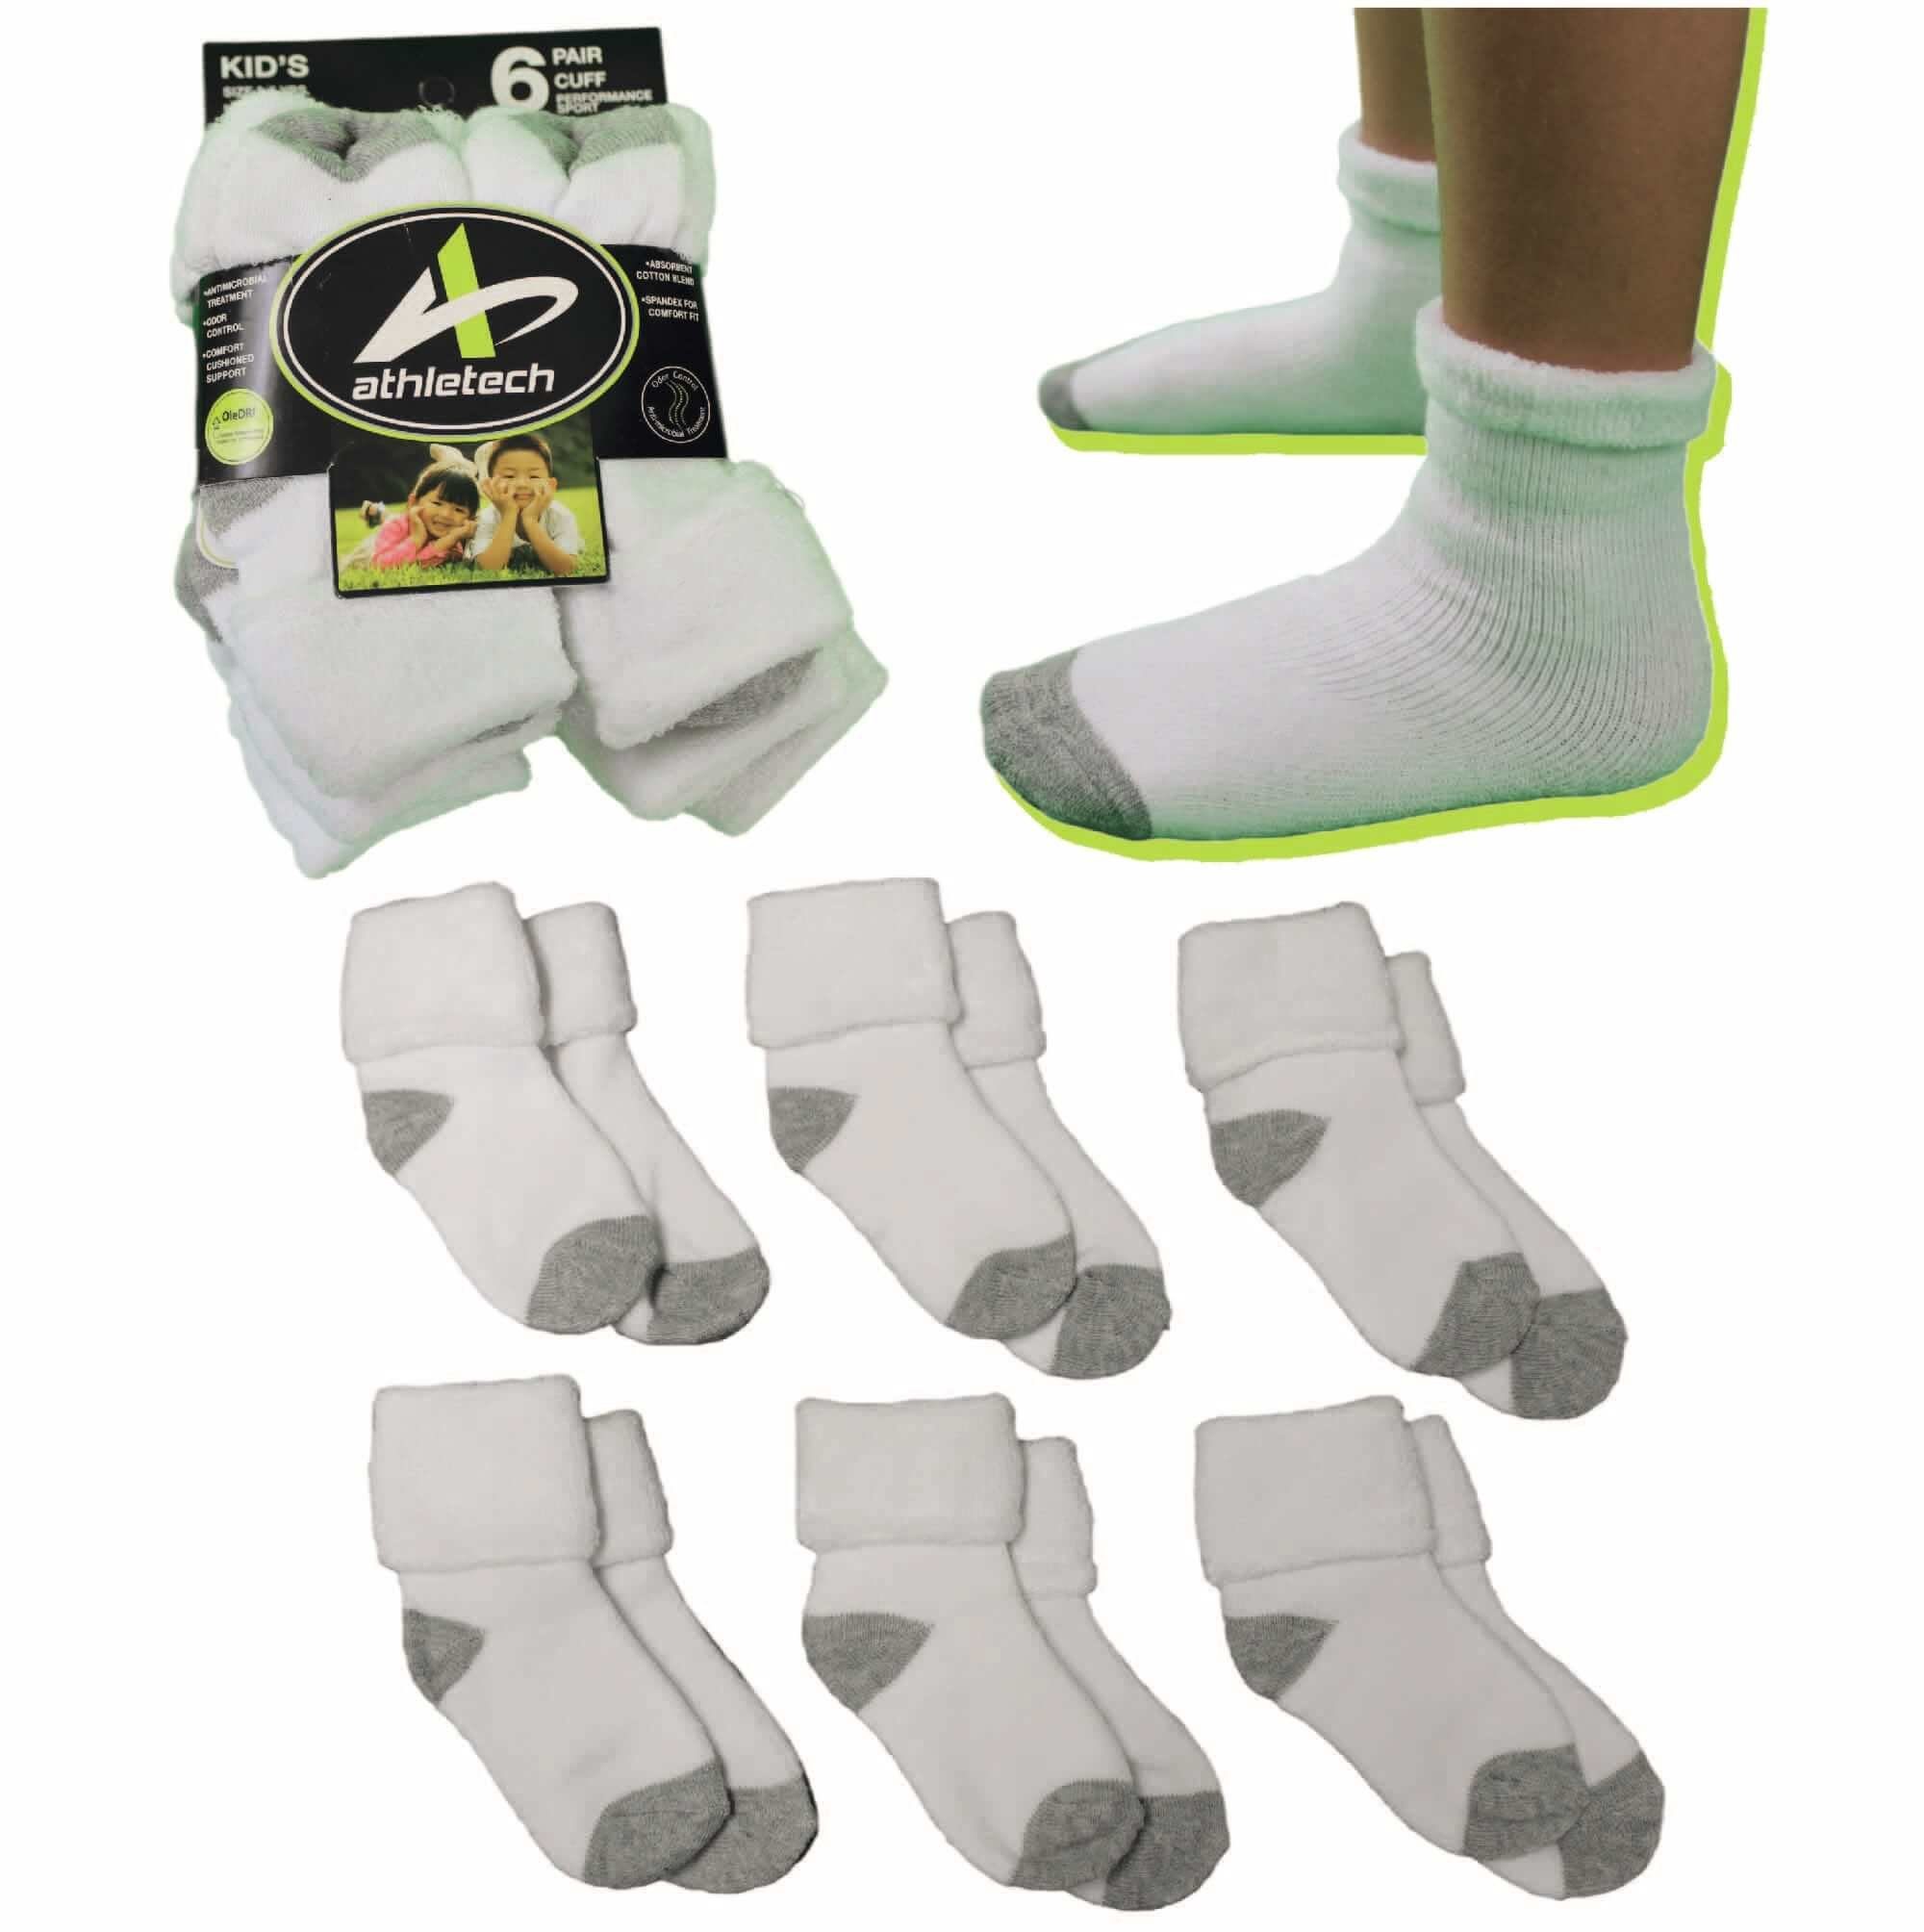 Athletech Thermosocken 6 Paar Thermo Socken für Kinder 3-5 Jahre bis Gr.34 | Thermosocken